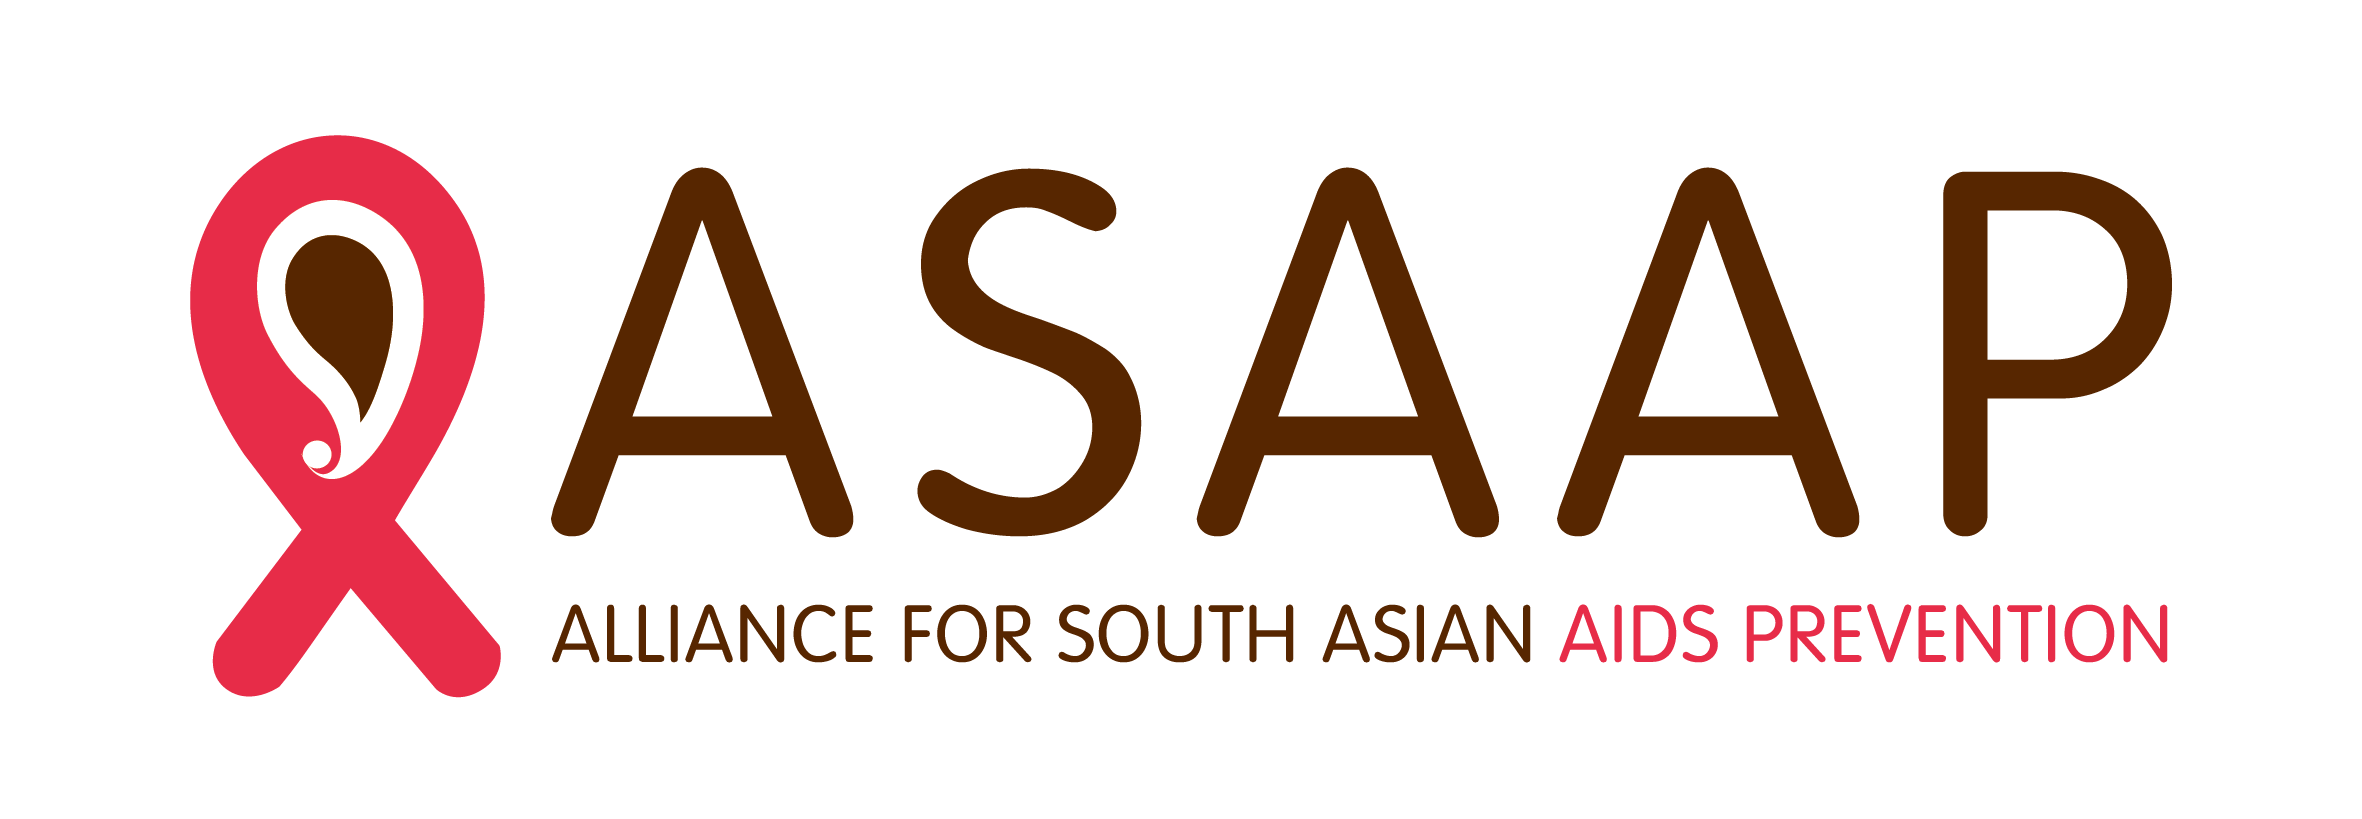 ASAAP logo